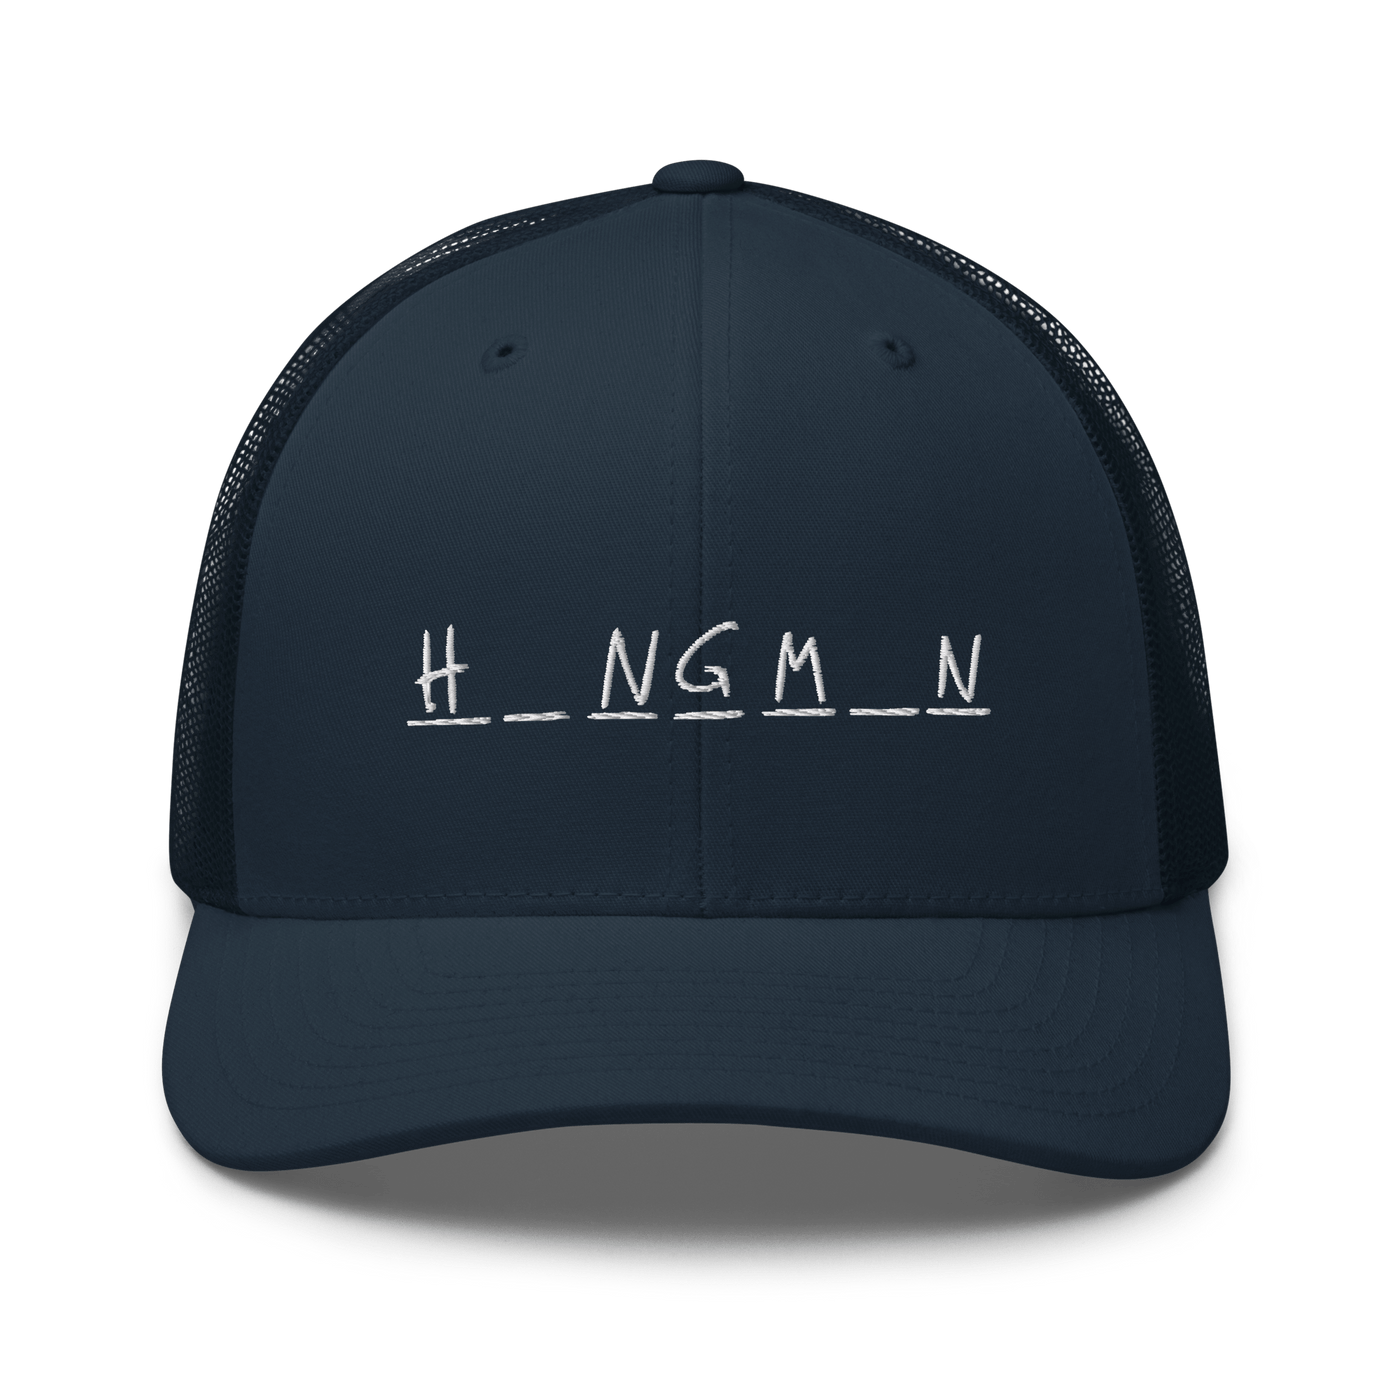 Hangman Trucker Cap - Black - - Just Another Cap Store